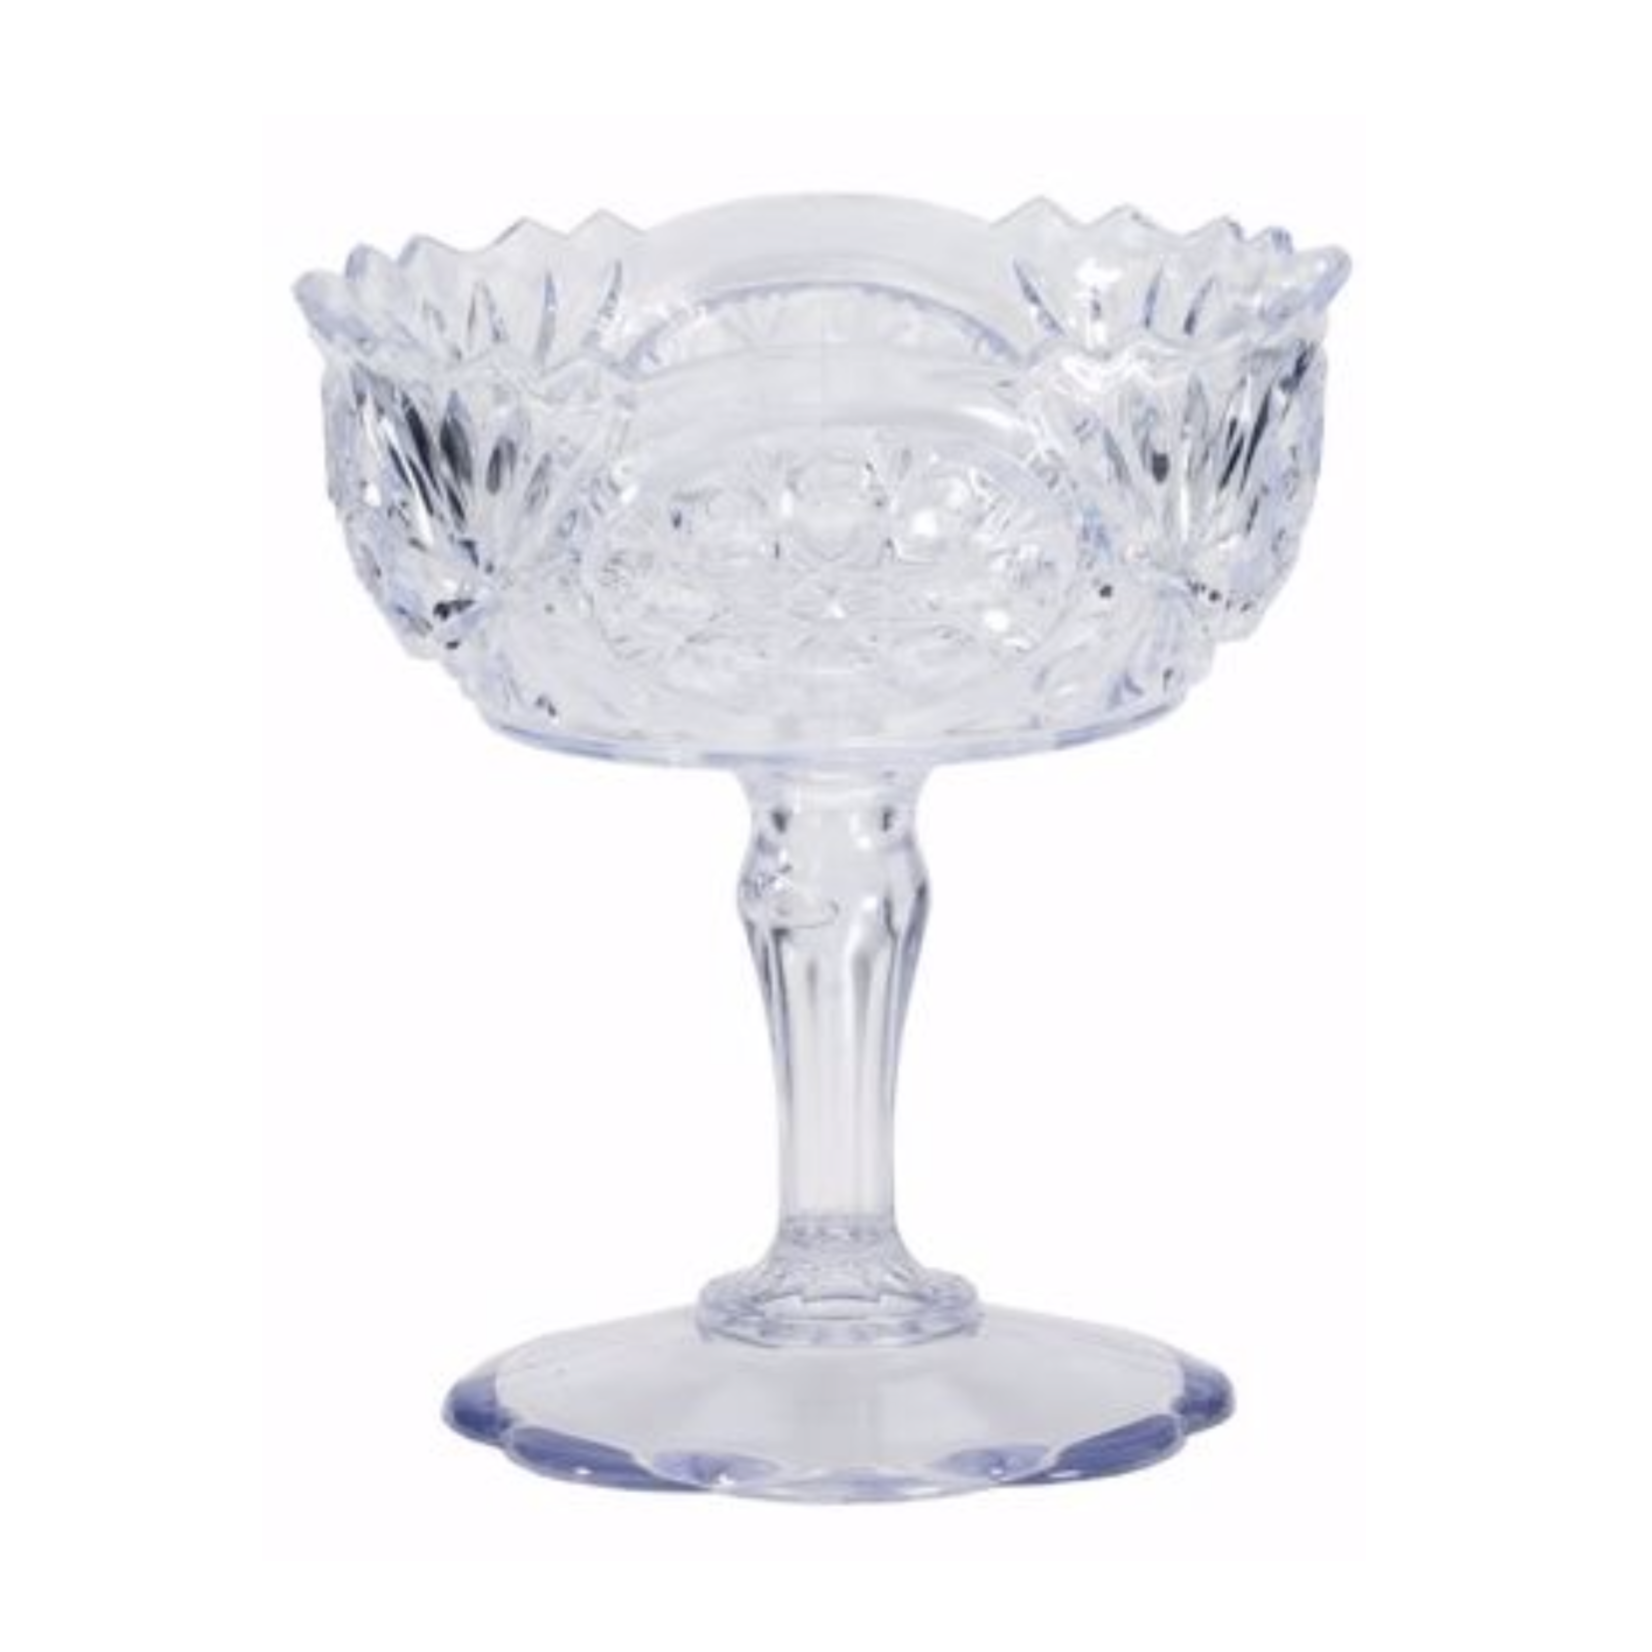 7" x 6.25" Crystal Pedestal Vase CLEAR